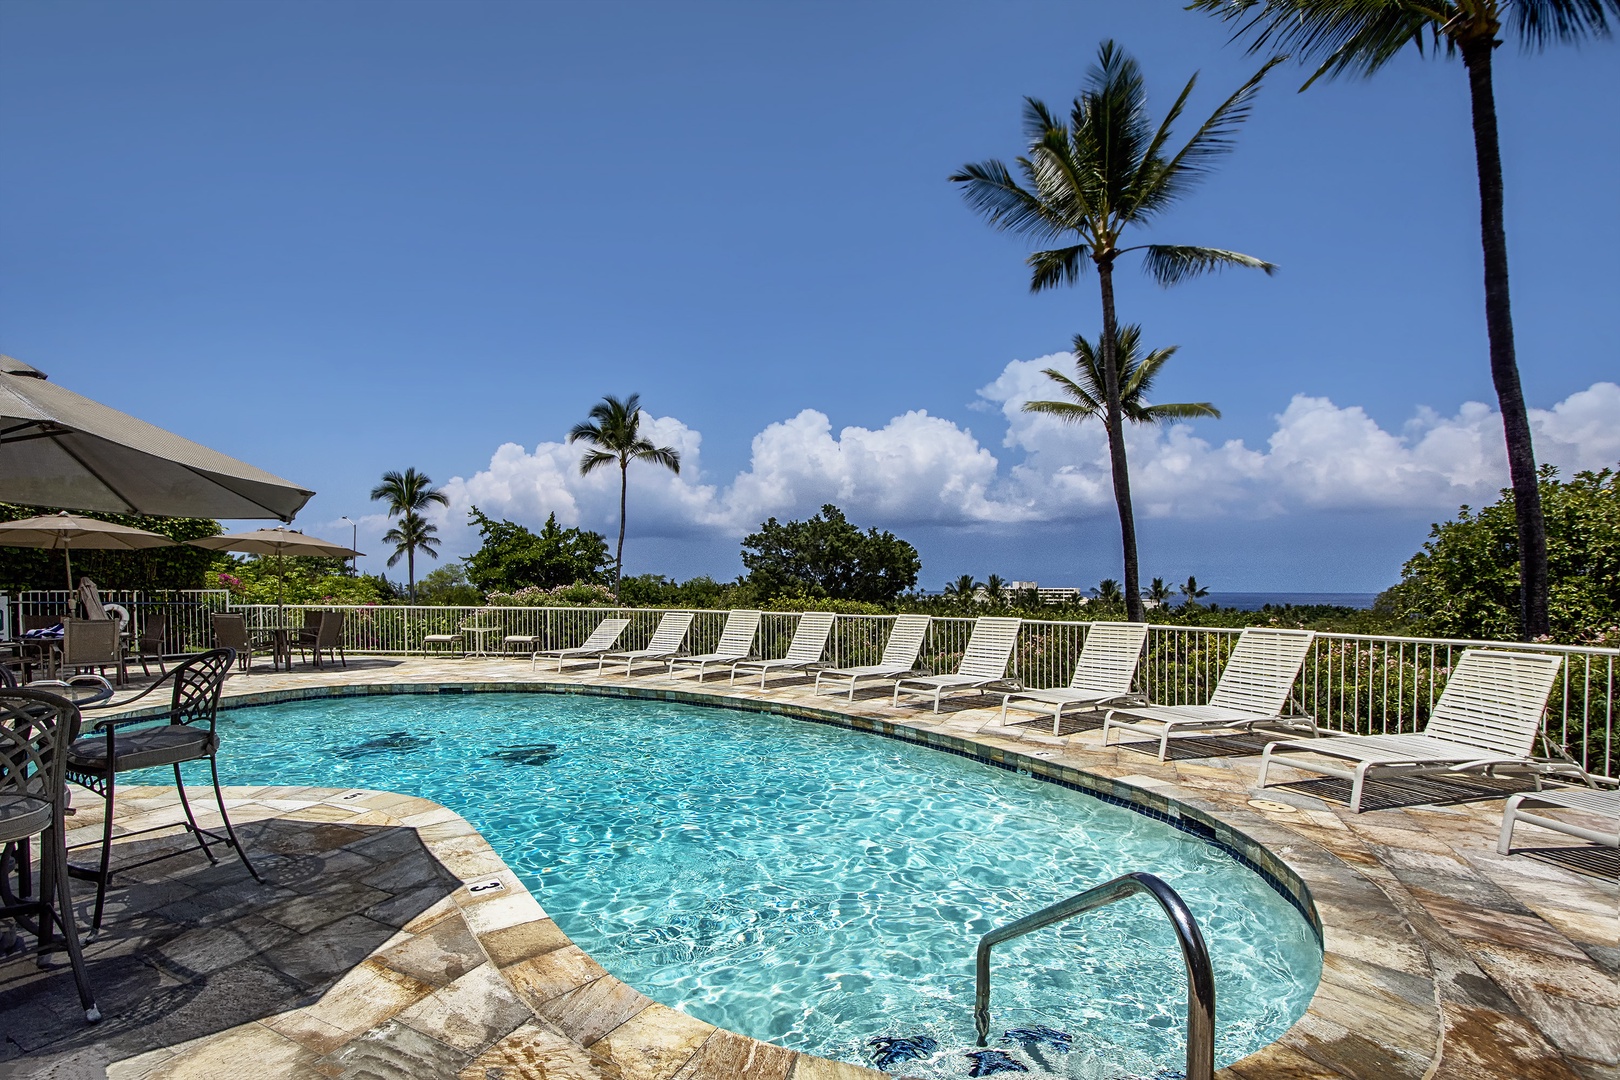 Kailua Kona Vacation Rentals, Keauhou Akahi 302 - Complex pool